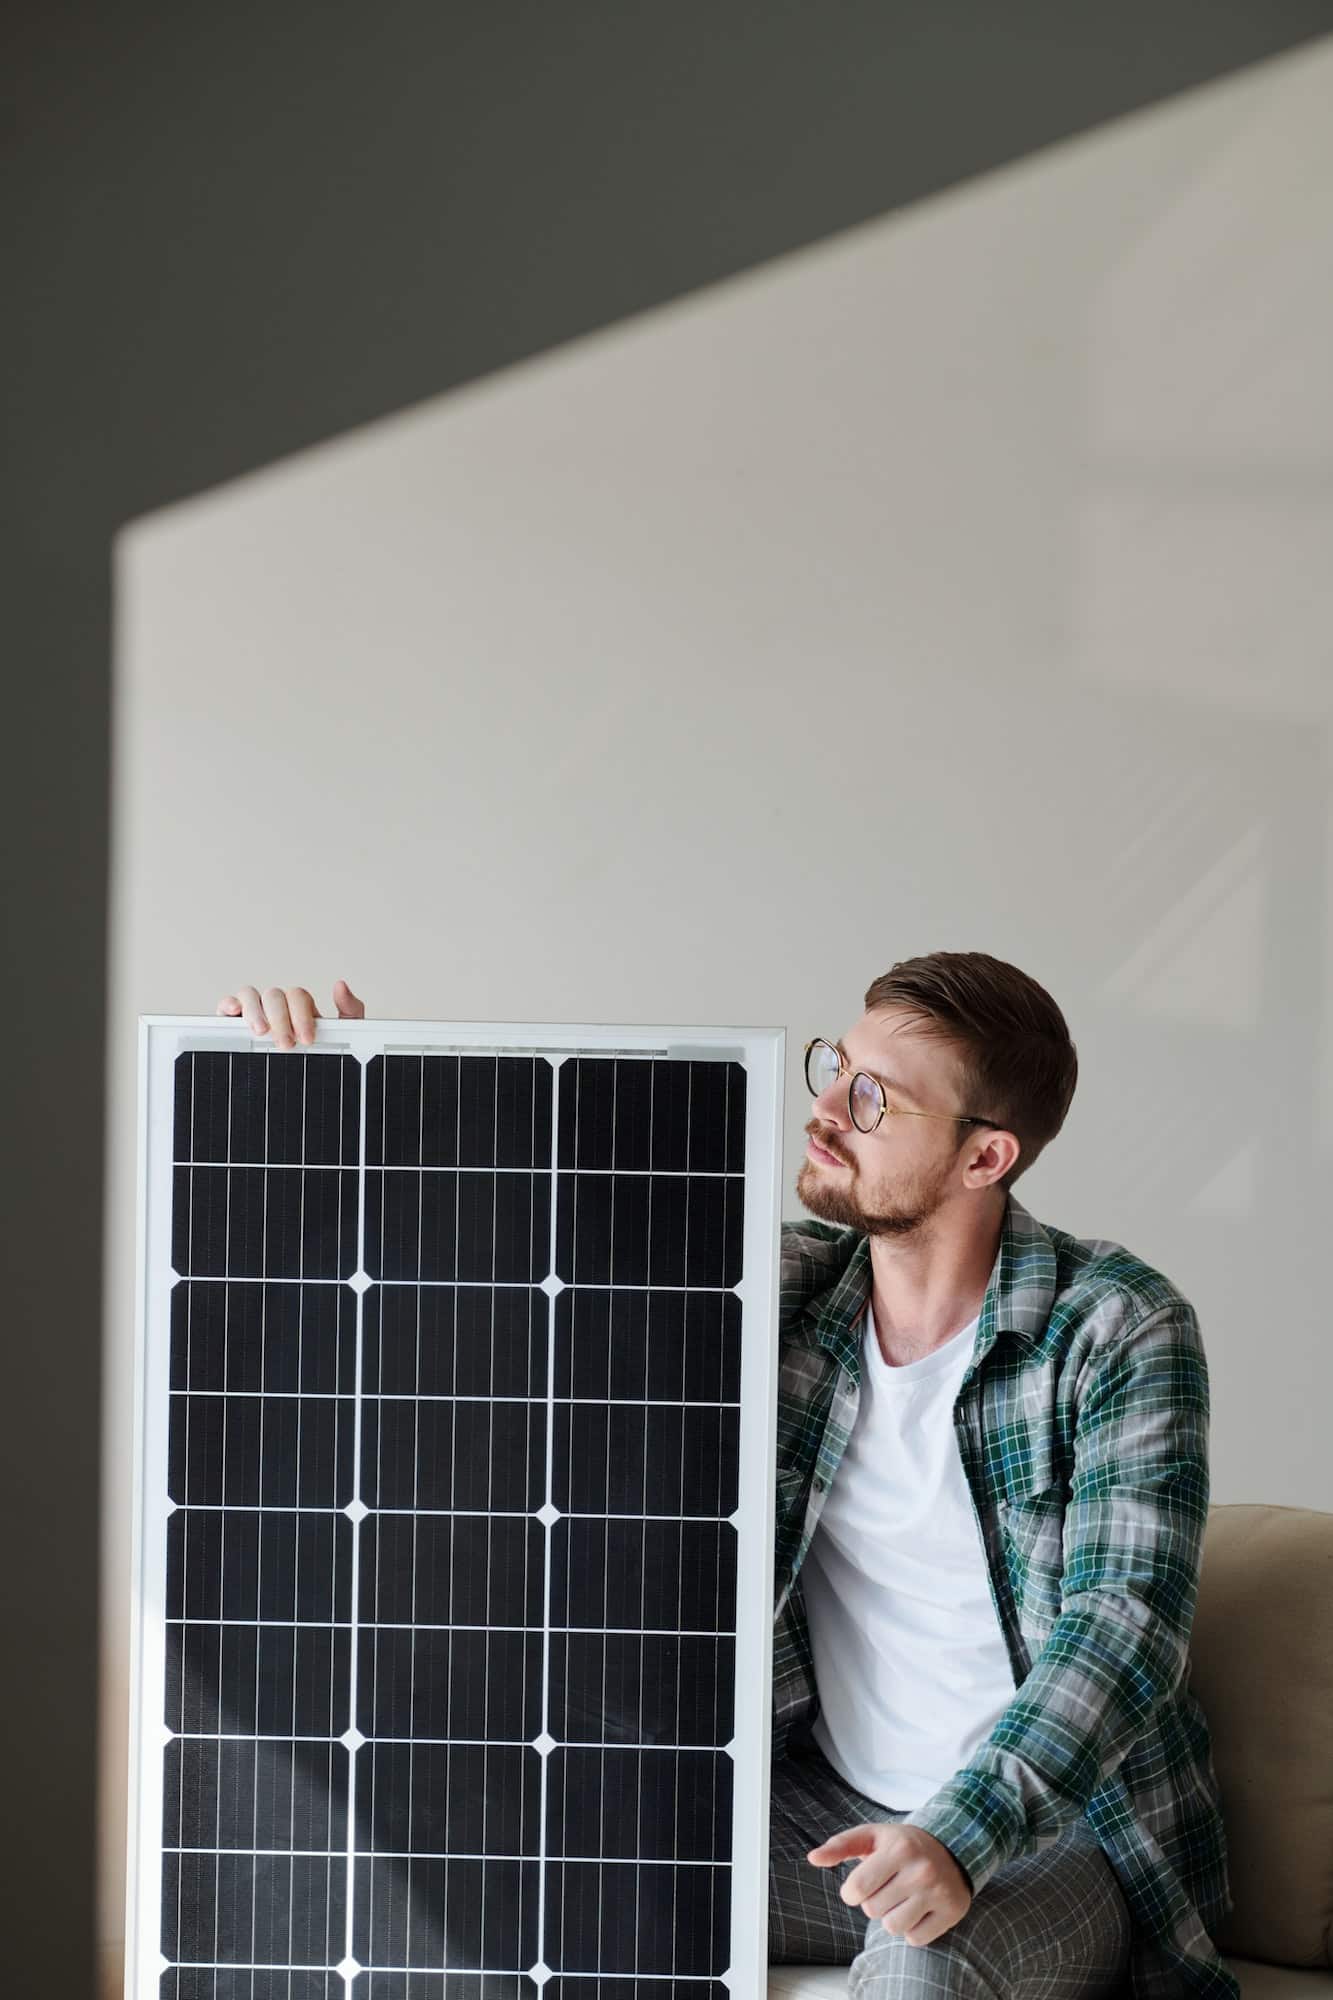 Panneaux solaires : une solution efficace comme alternative écologique